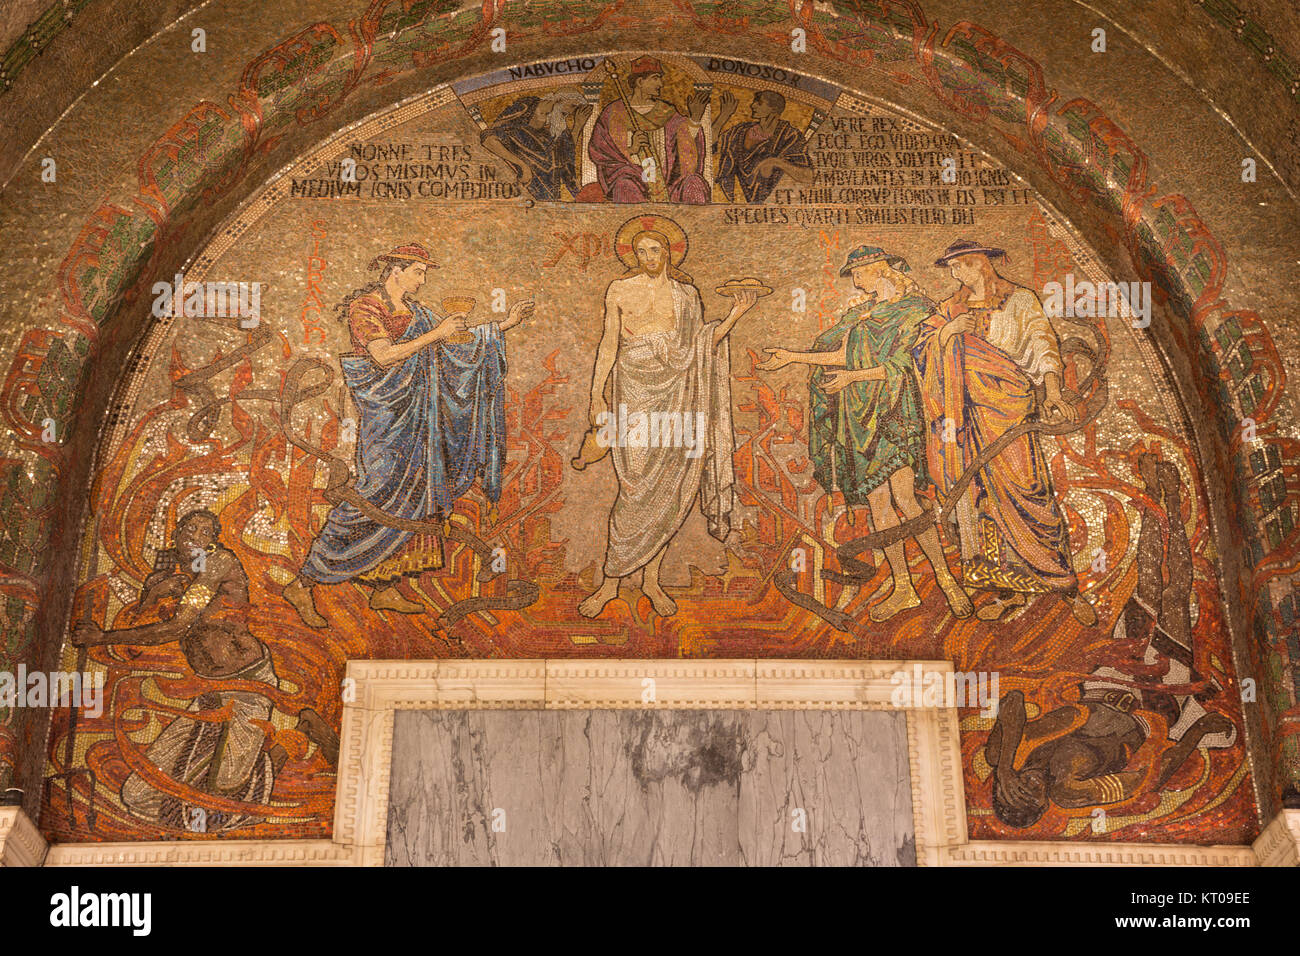 Londres, Gran Bretaña - Septiembre 17, 2017: El mosaico de Jesucristo en la catedral de Westminster con el vino y el pan simbólico Foto de stock